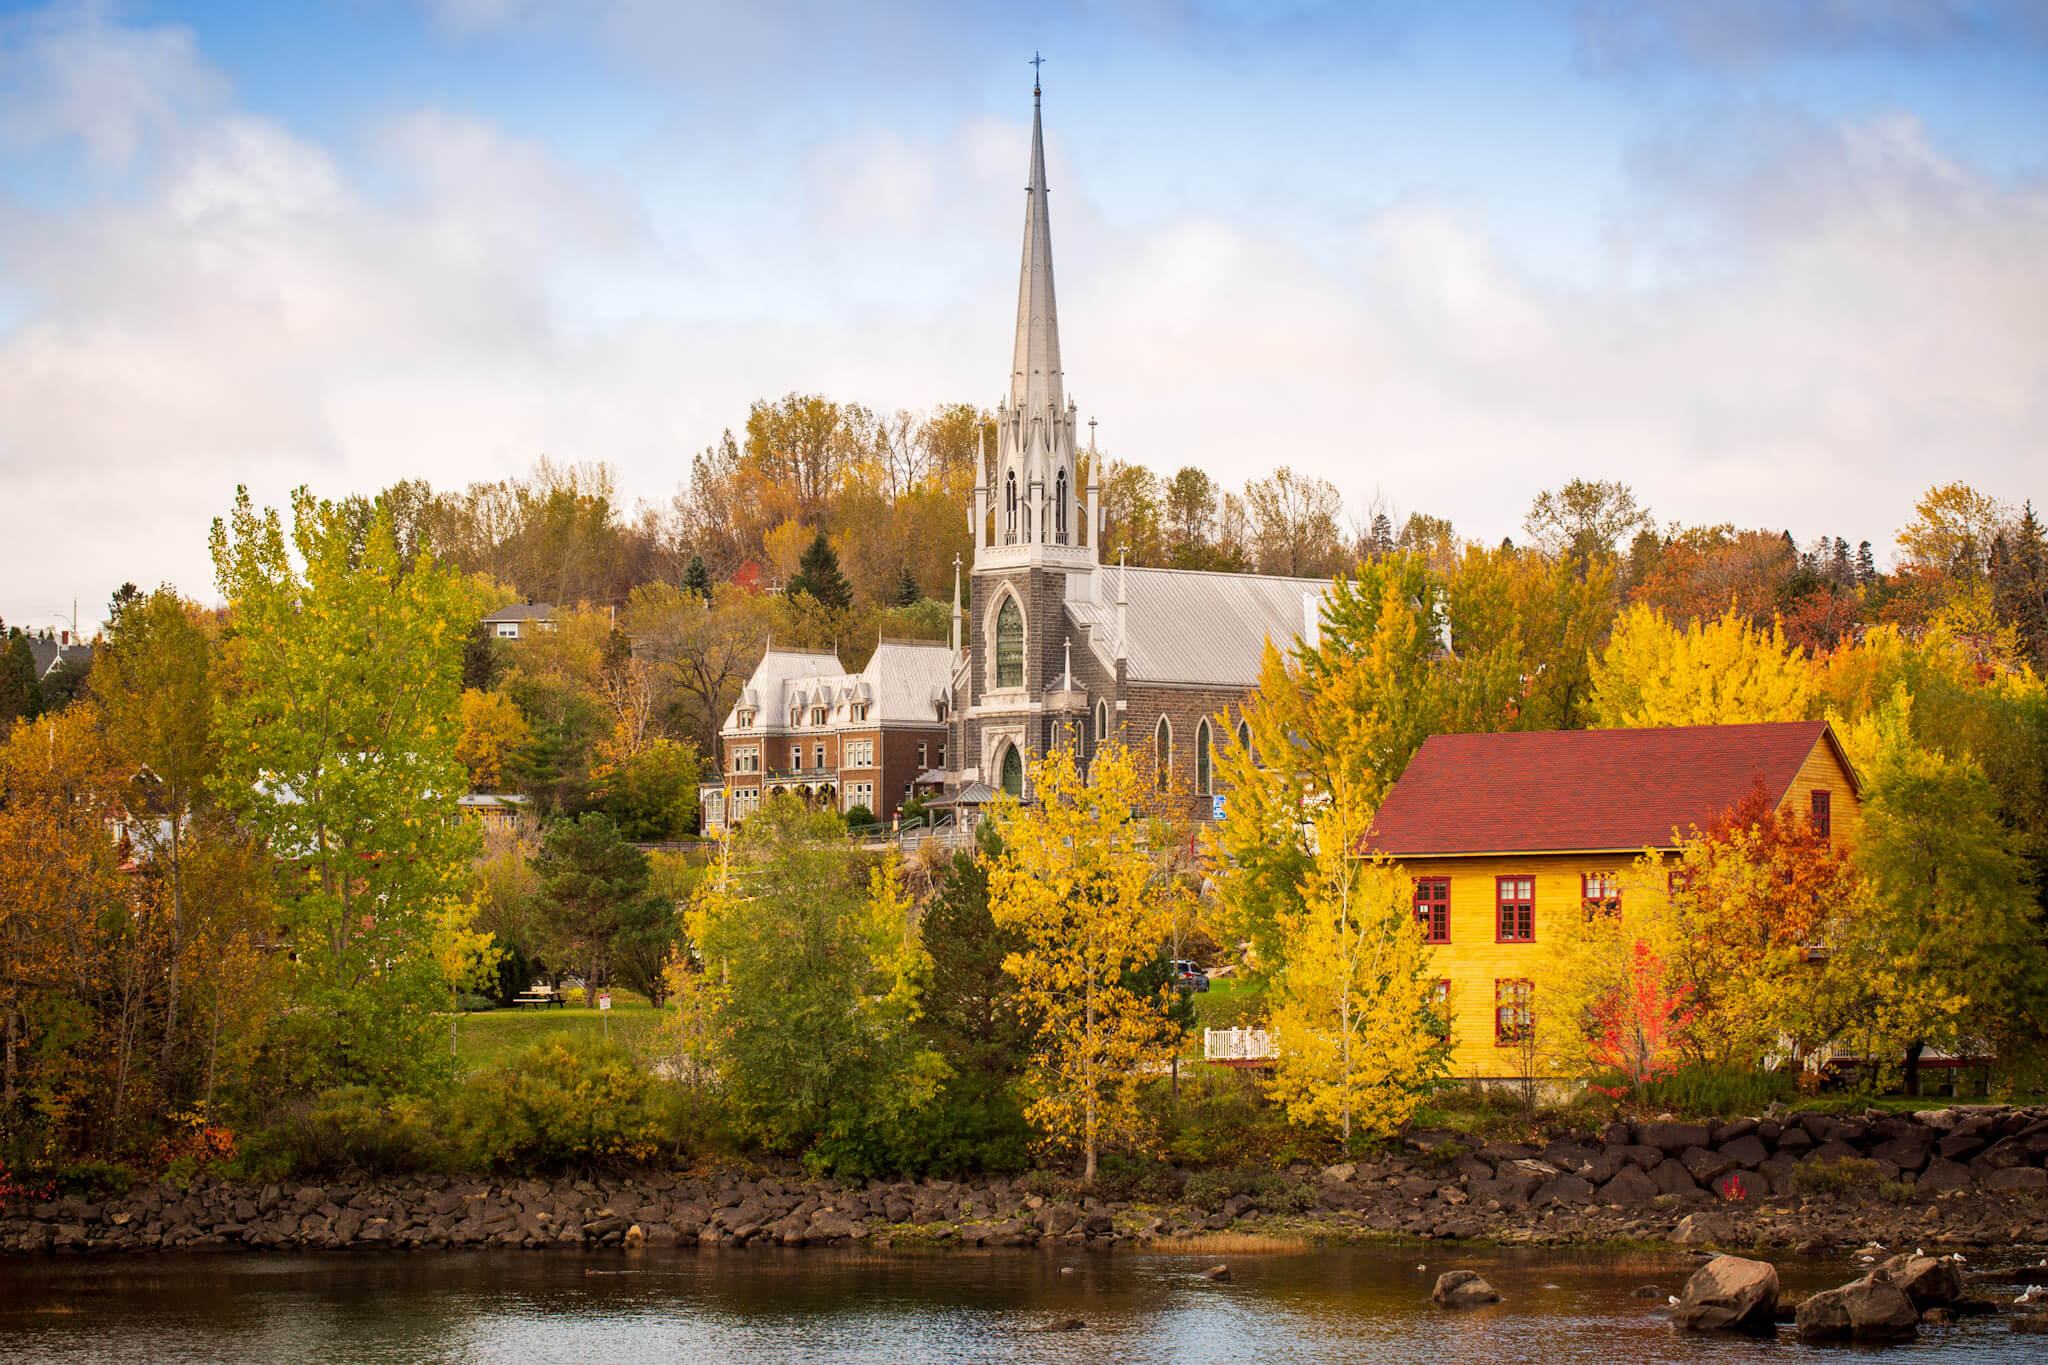 Historic Chicoutimi, Québec and the Chicoutimi river